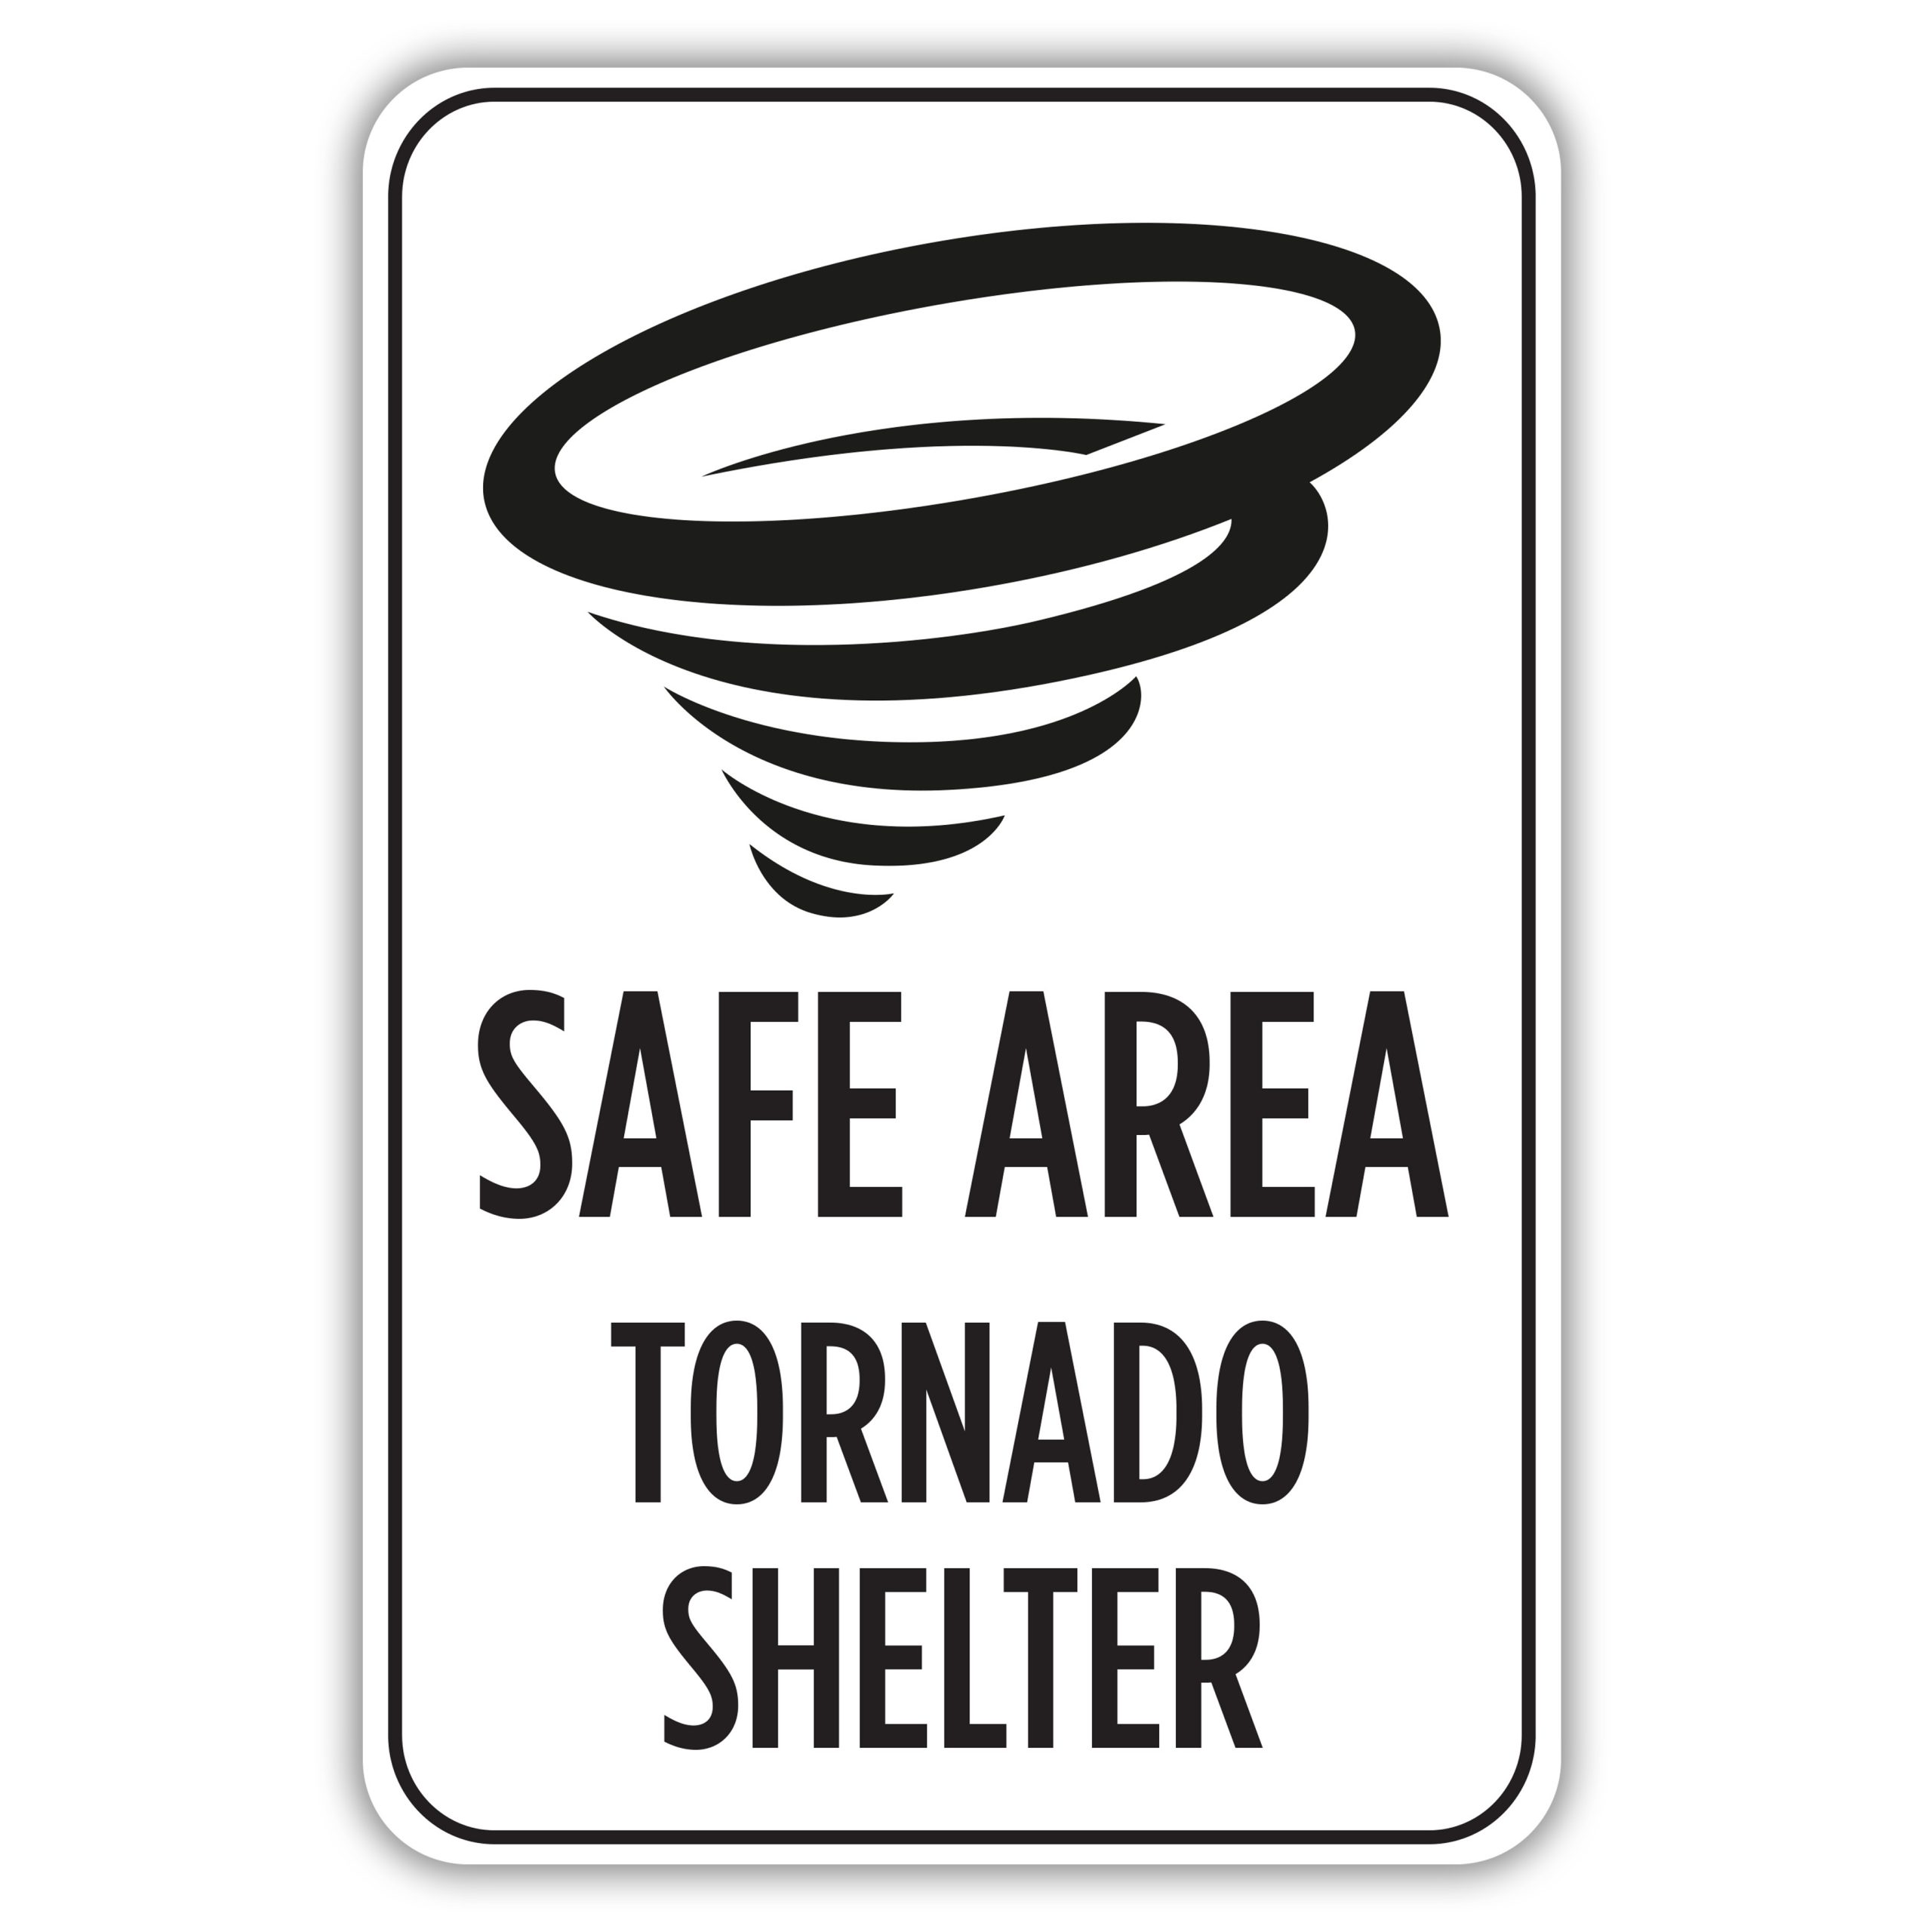 Printable Tornado Safe Room Signs